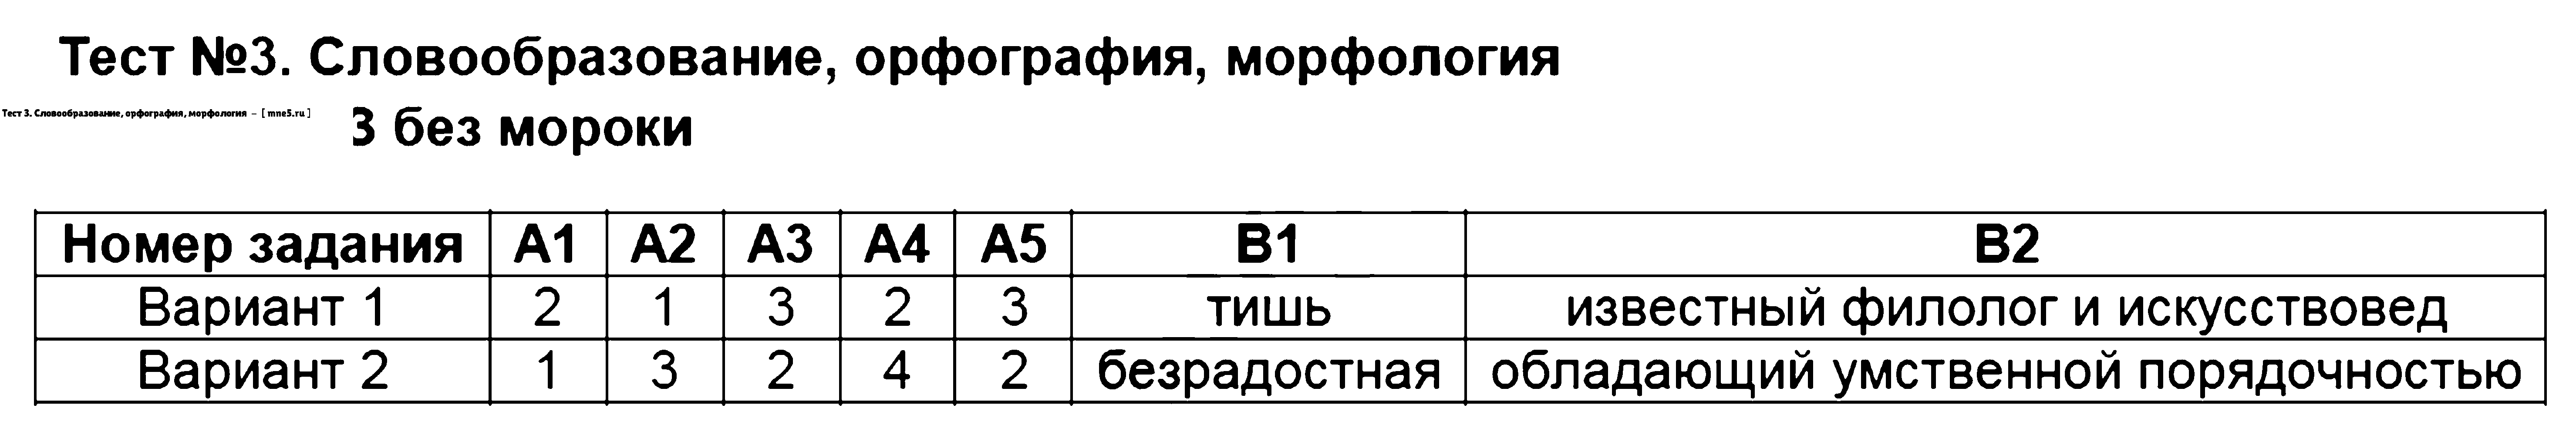 ГДЗ Русский язык 9 класс - Тест 3. Словообразование, орфография, морфология